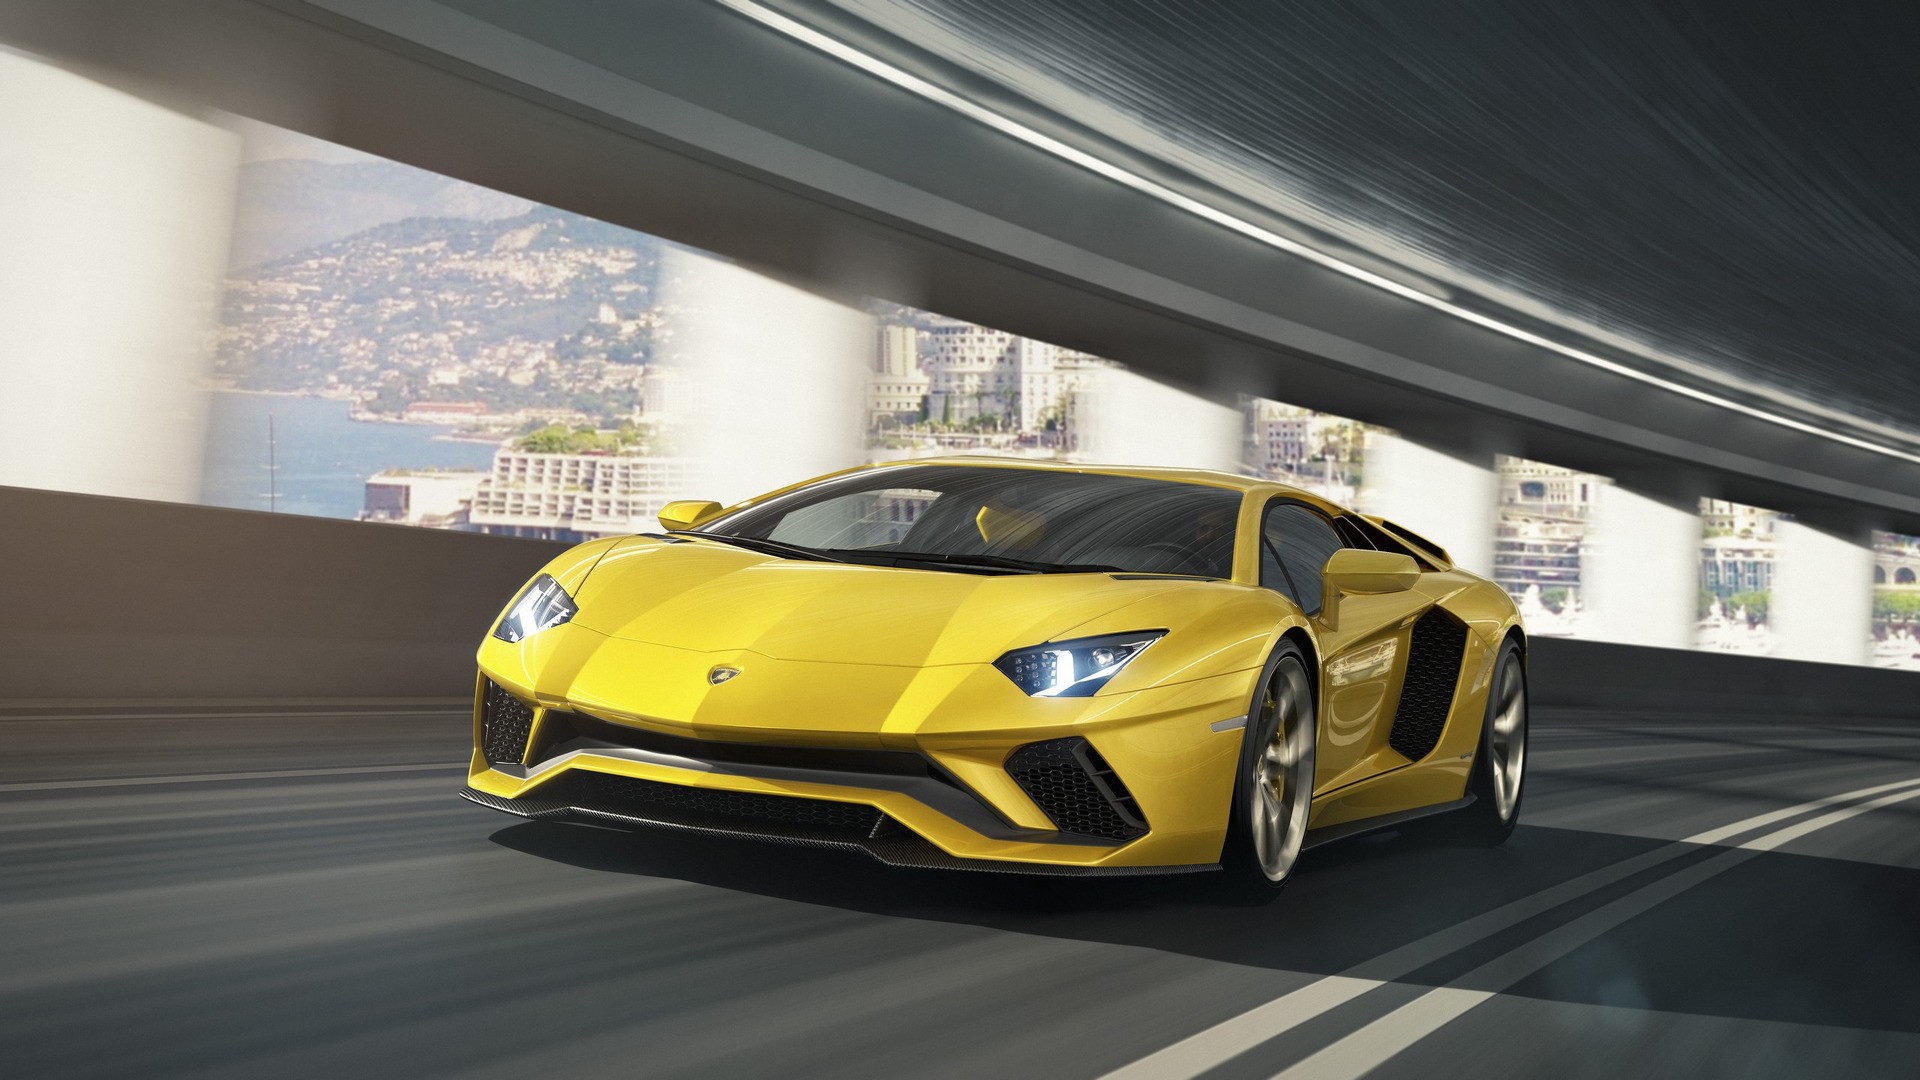 2020 Lamborghini Aventador Successor To Use V12 Engine And ...